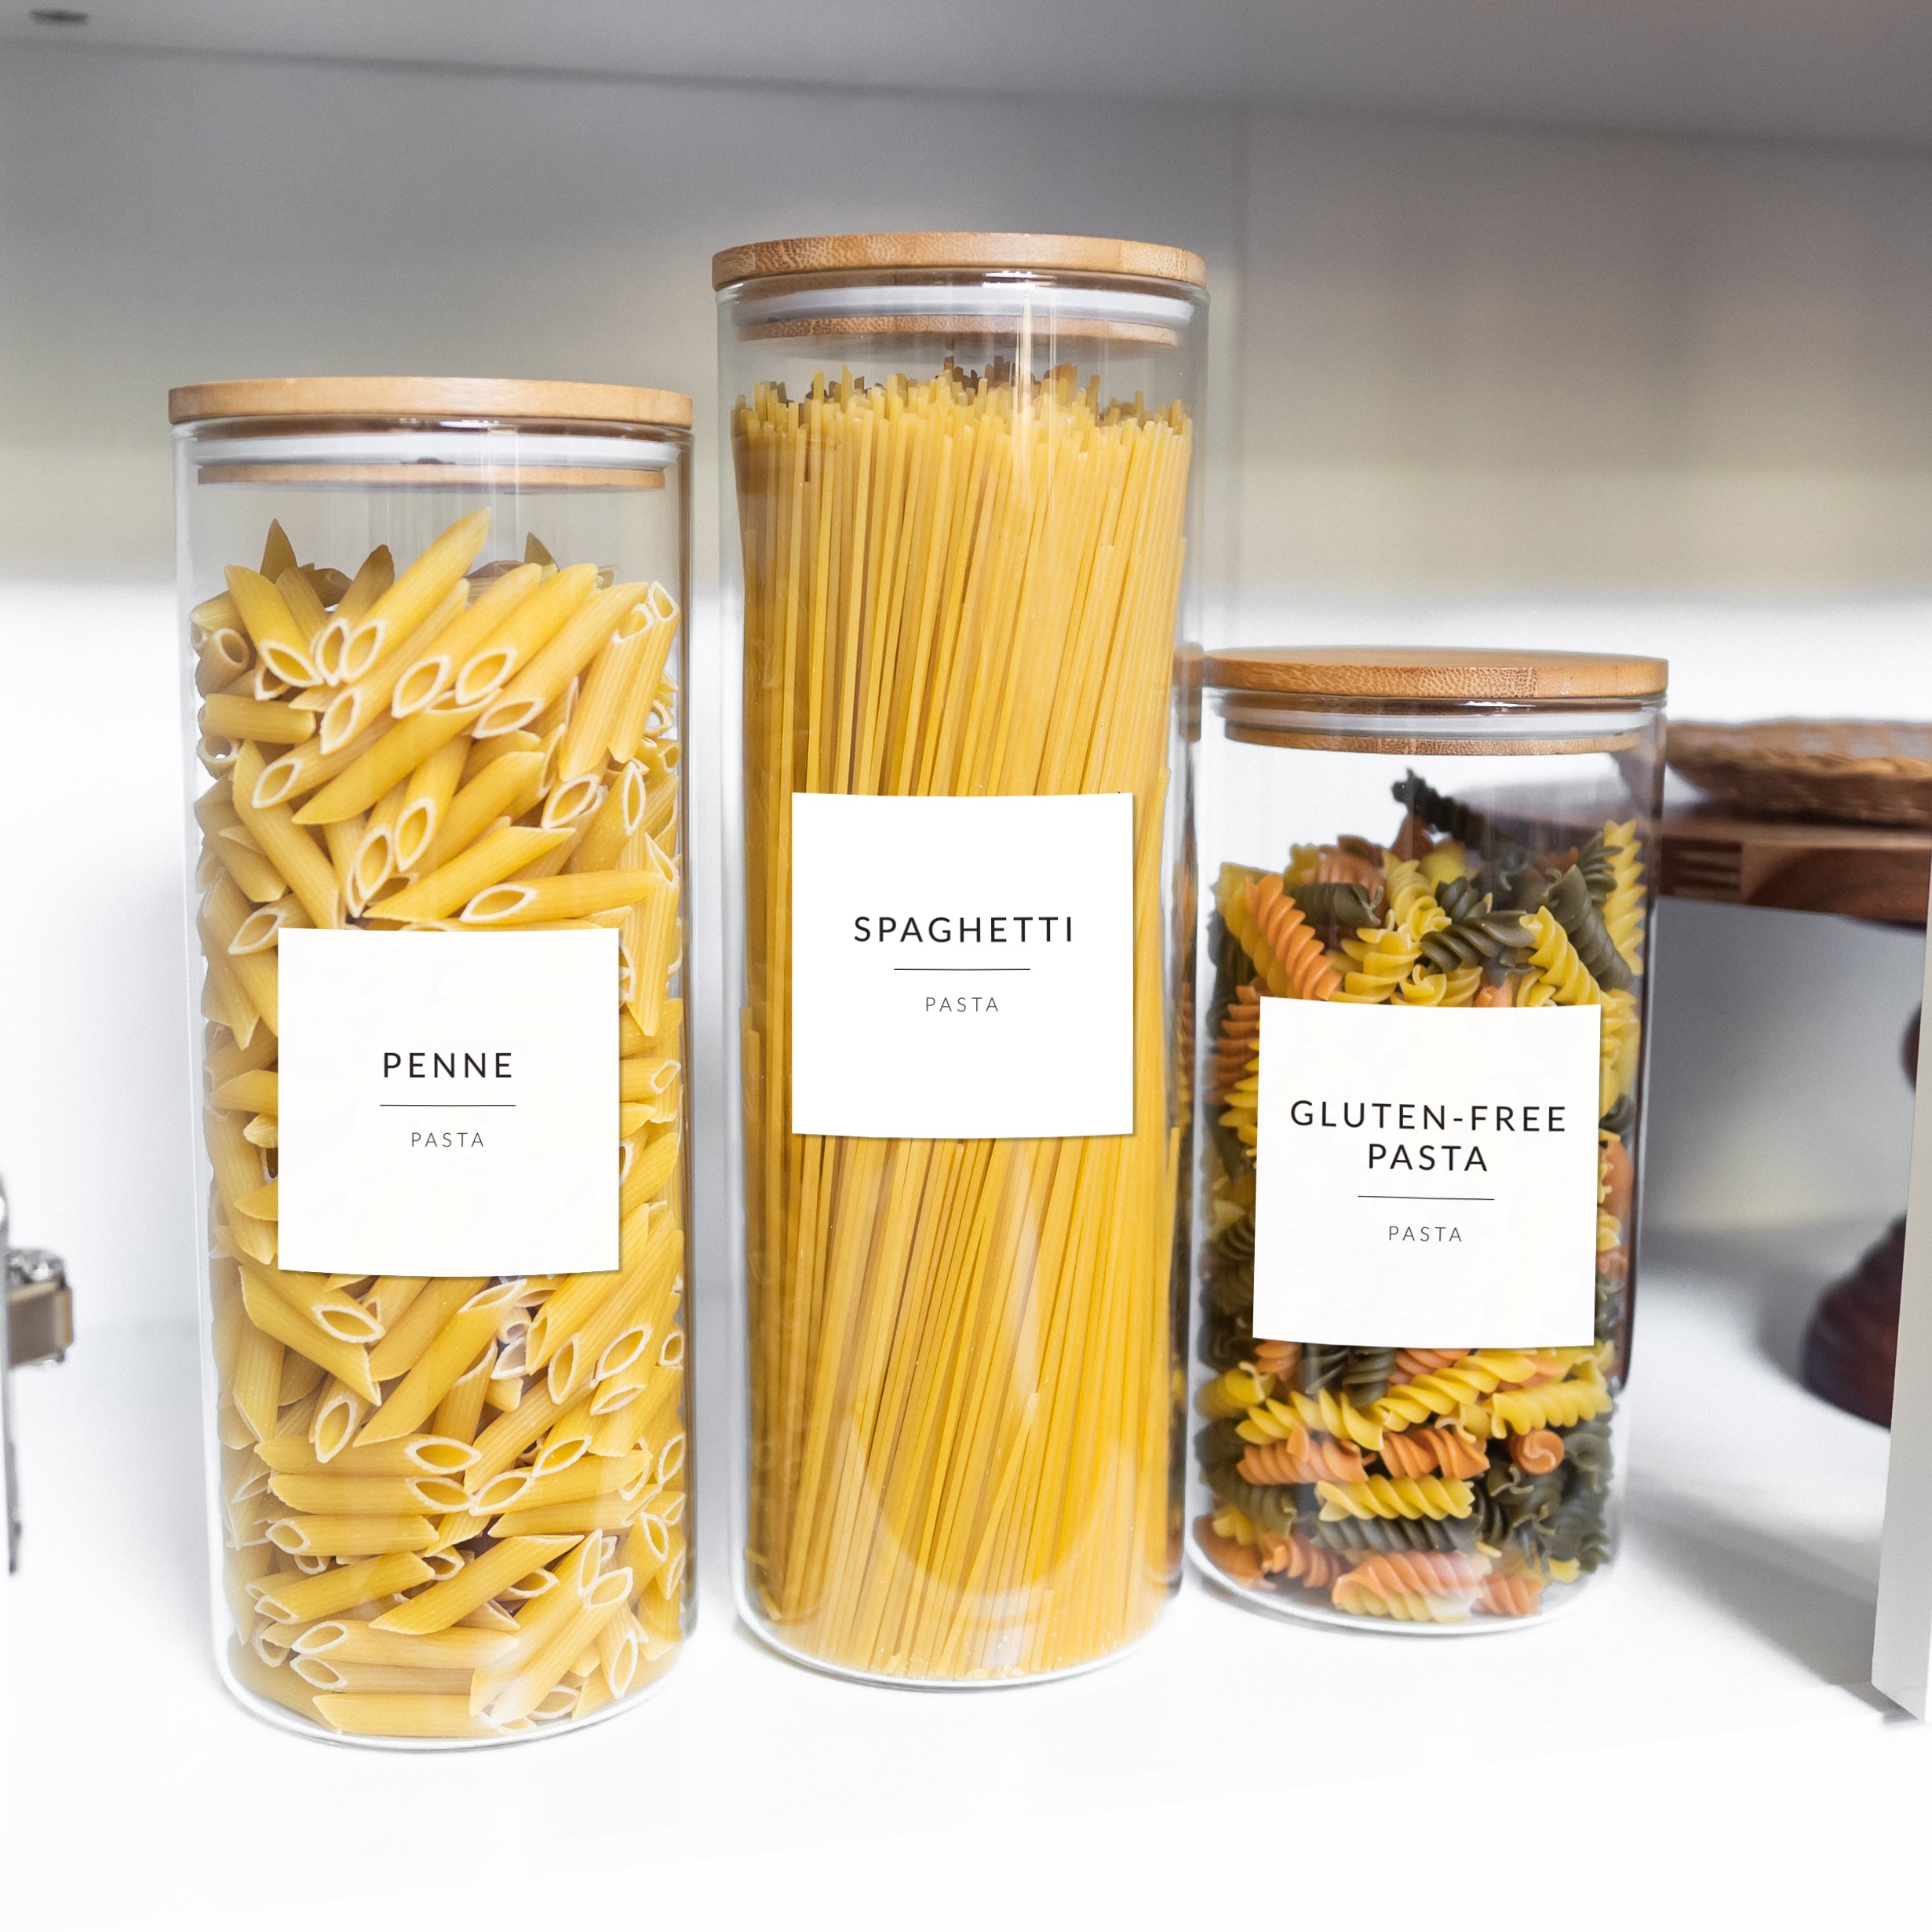 Etiquettes « Spice minimalist labels » – Designed by Cloé